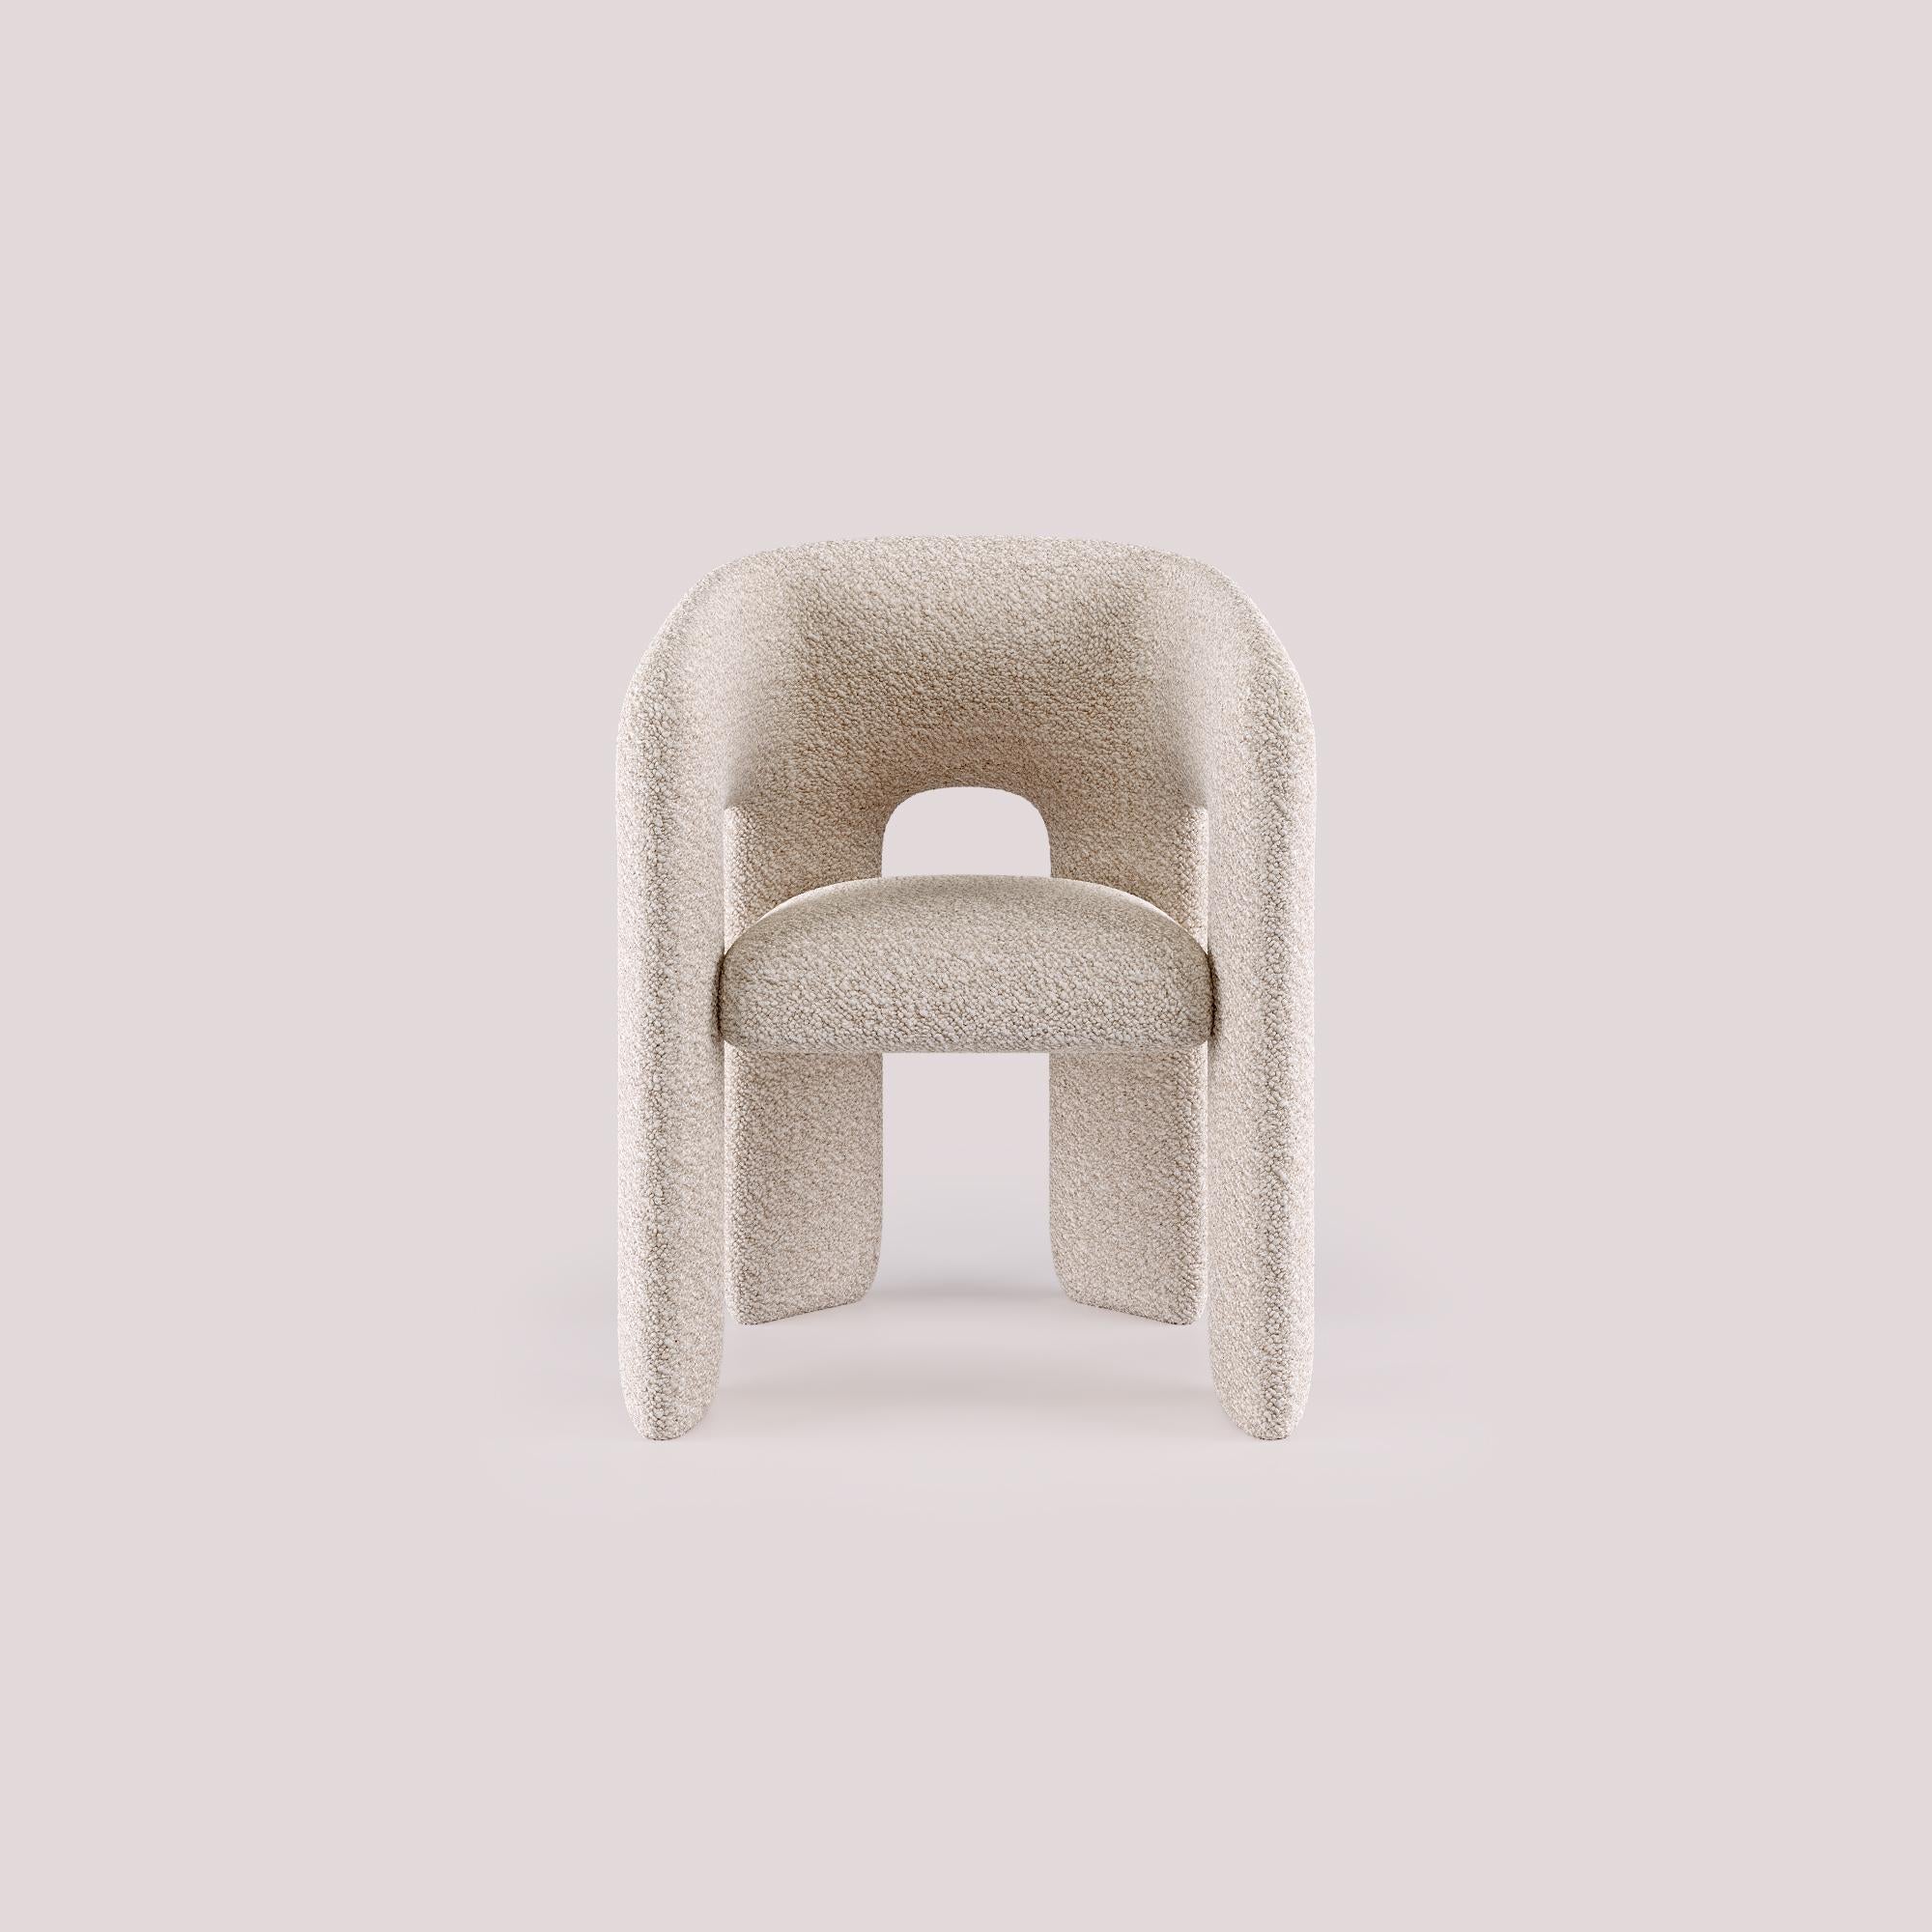 Avec un design moderne et raffiné, le fauteuil de salle à manger Bold incarne l'essence même de la vie contemporaine. Une pièce qui séduit par son élégance intemporelle et son charme sophistiqué. Sa silhouette épurée et ses finitions luxueuses